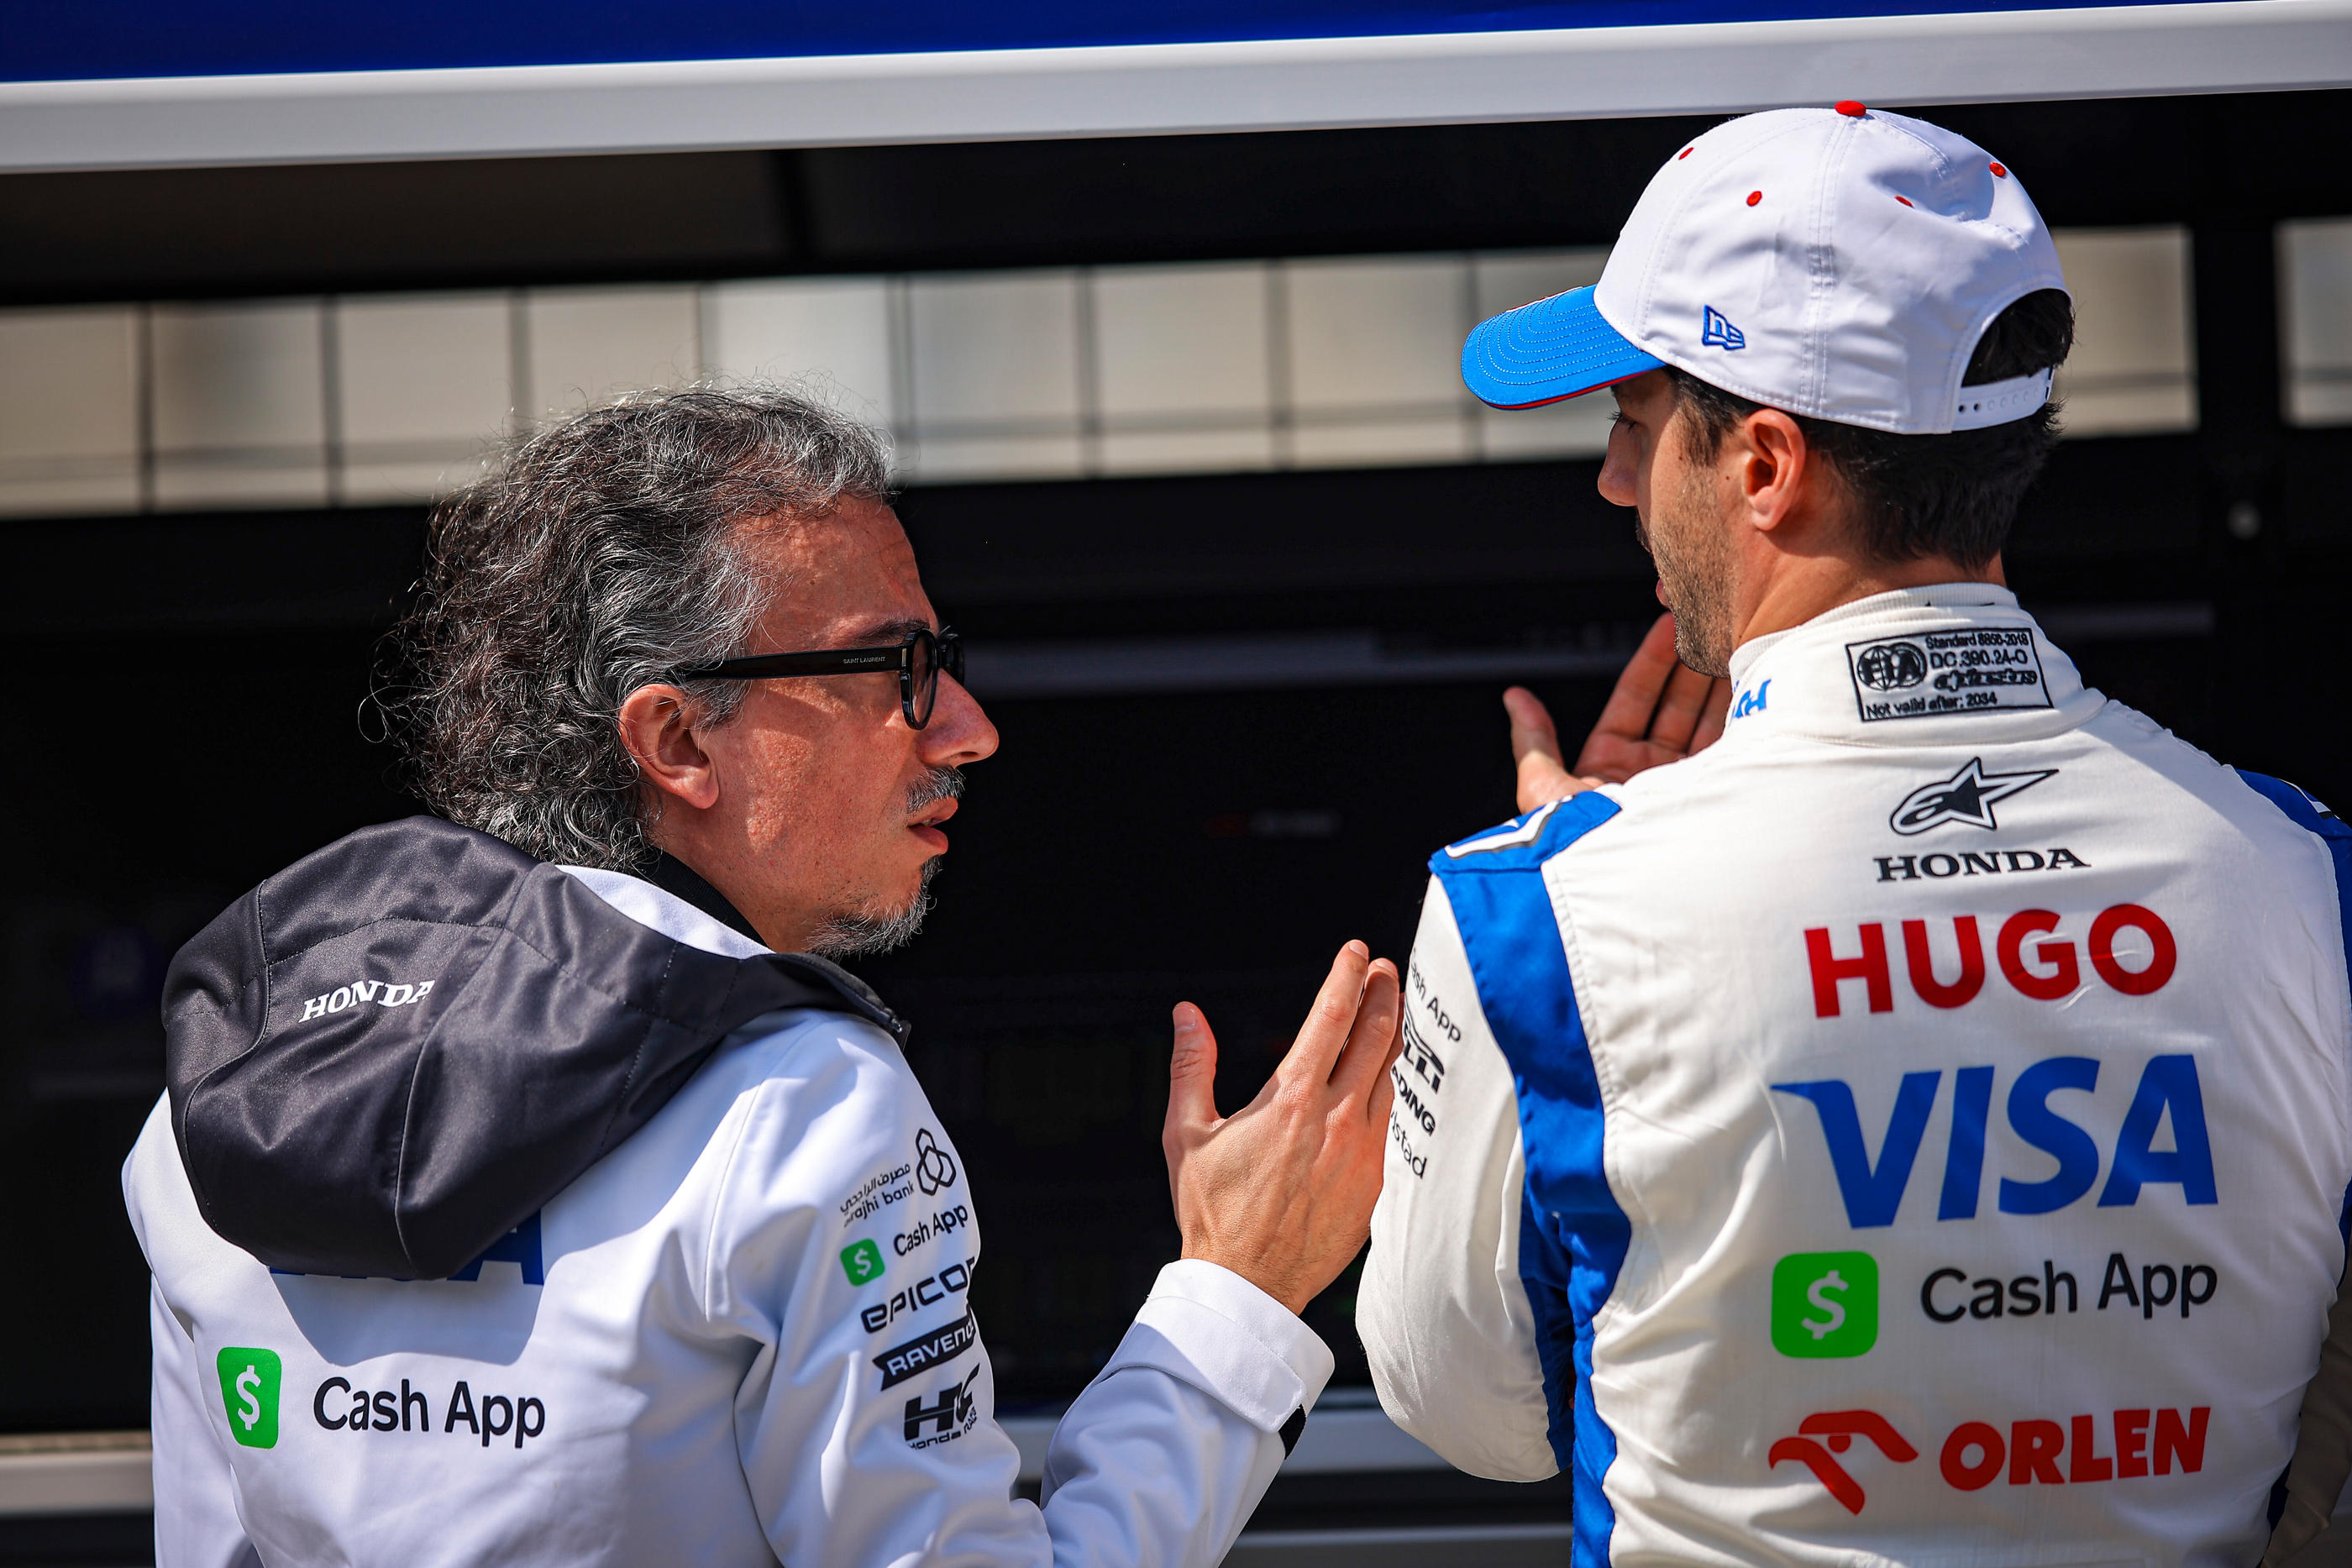 Laurent Mekies, patron de Racing Bulls, aux côtés de son pilote Daniel Ricciardo. Icon Sport/Hoch Zwei